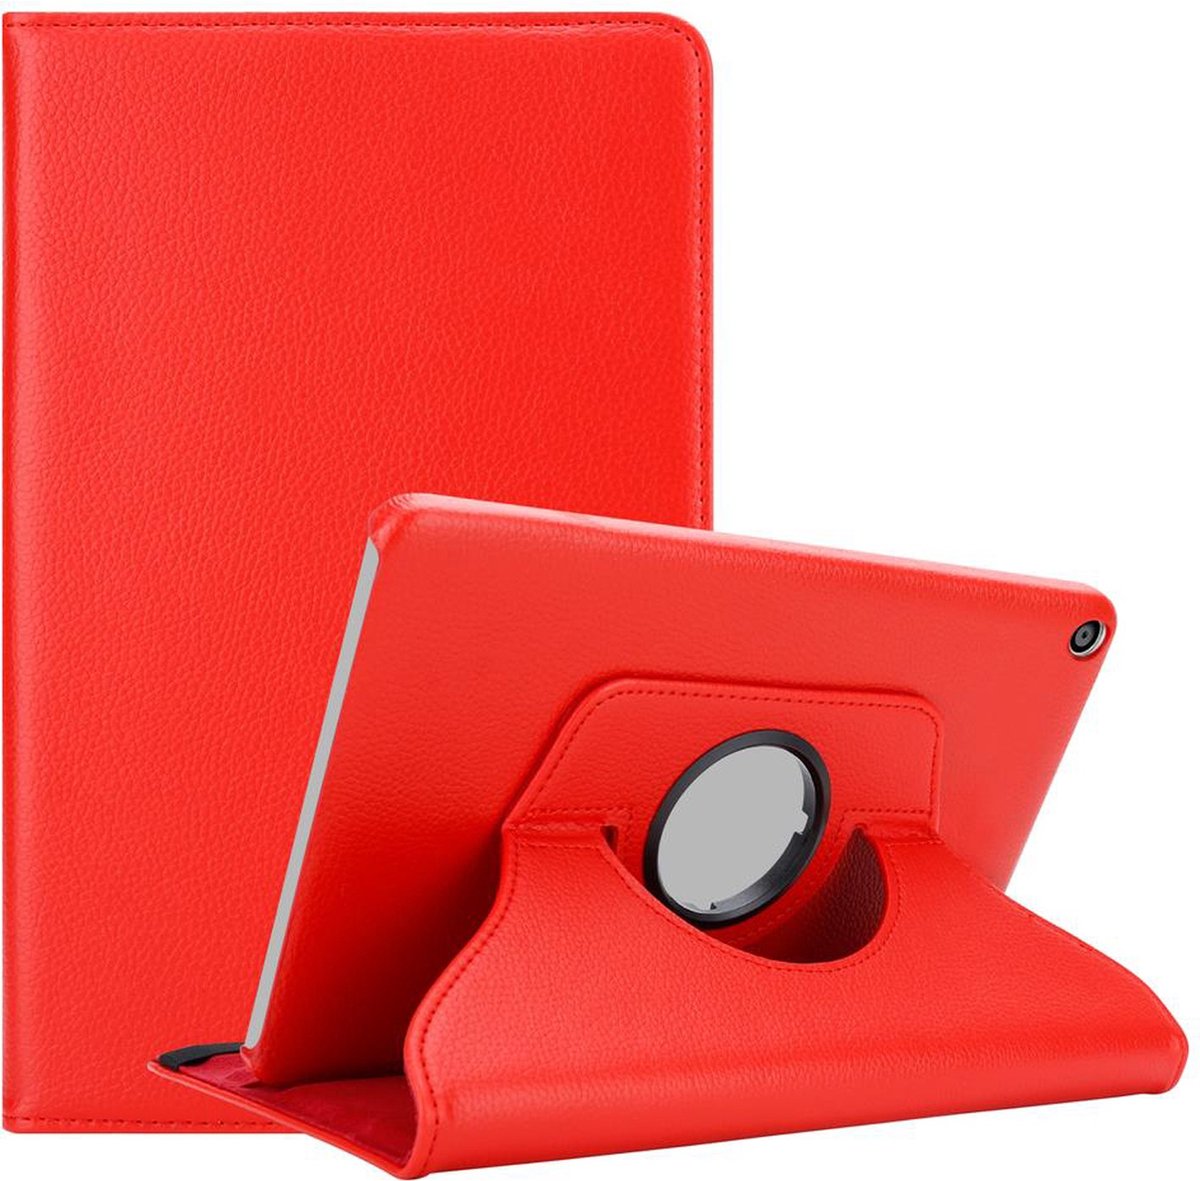 Cadorabo Tablet Hoesje voor Huawei MediaPad T3 8 (8.0 inch) in KLAPROOS ROOD - Beschermhoes ZONDER auto Wake Up, met stand functie en elastische band sluiting Book Case Cover Etui